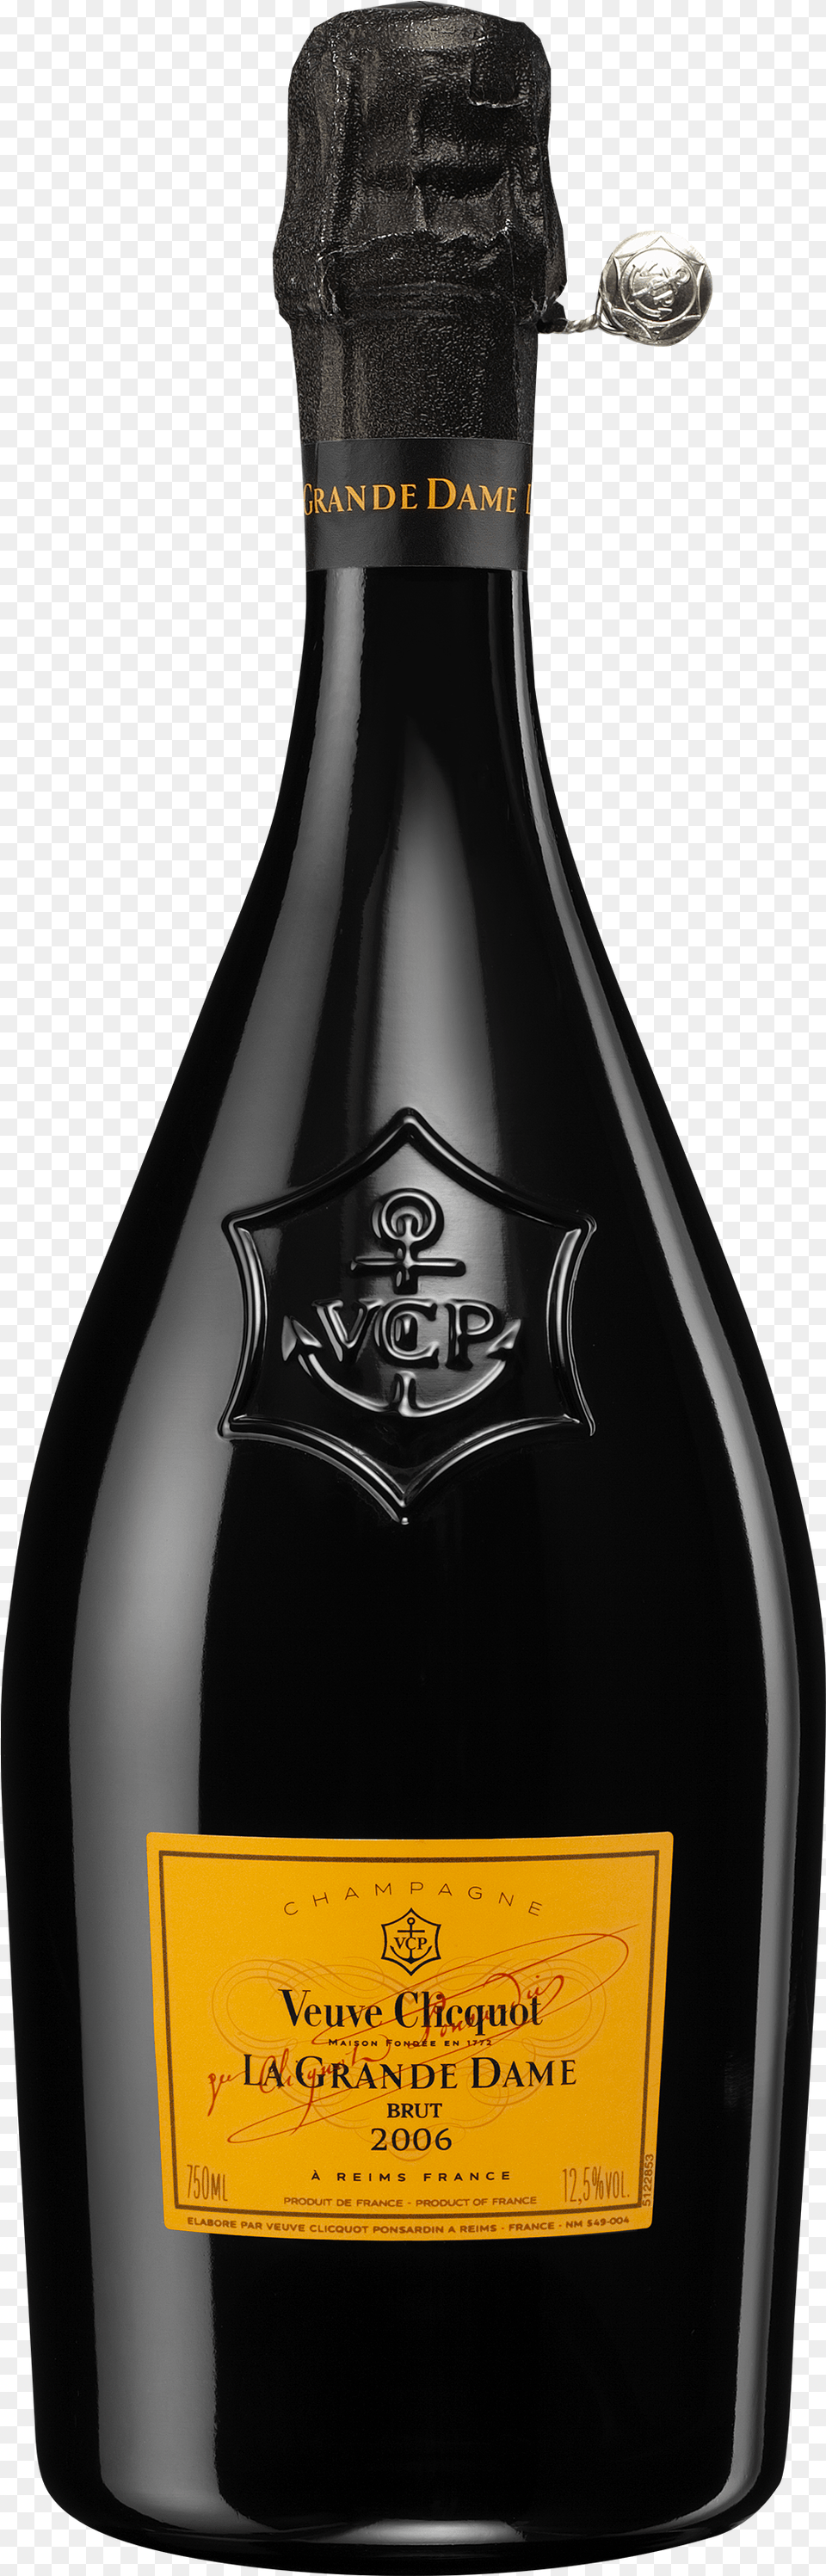 Bottle Of Champagne Download Veuve Clicquot Ponsardin La Grande Dame 2004, Alcohol, Beer, Beverage, Liquor Png